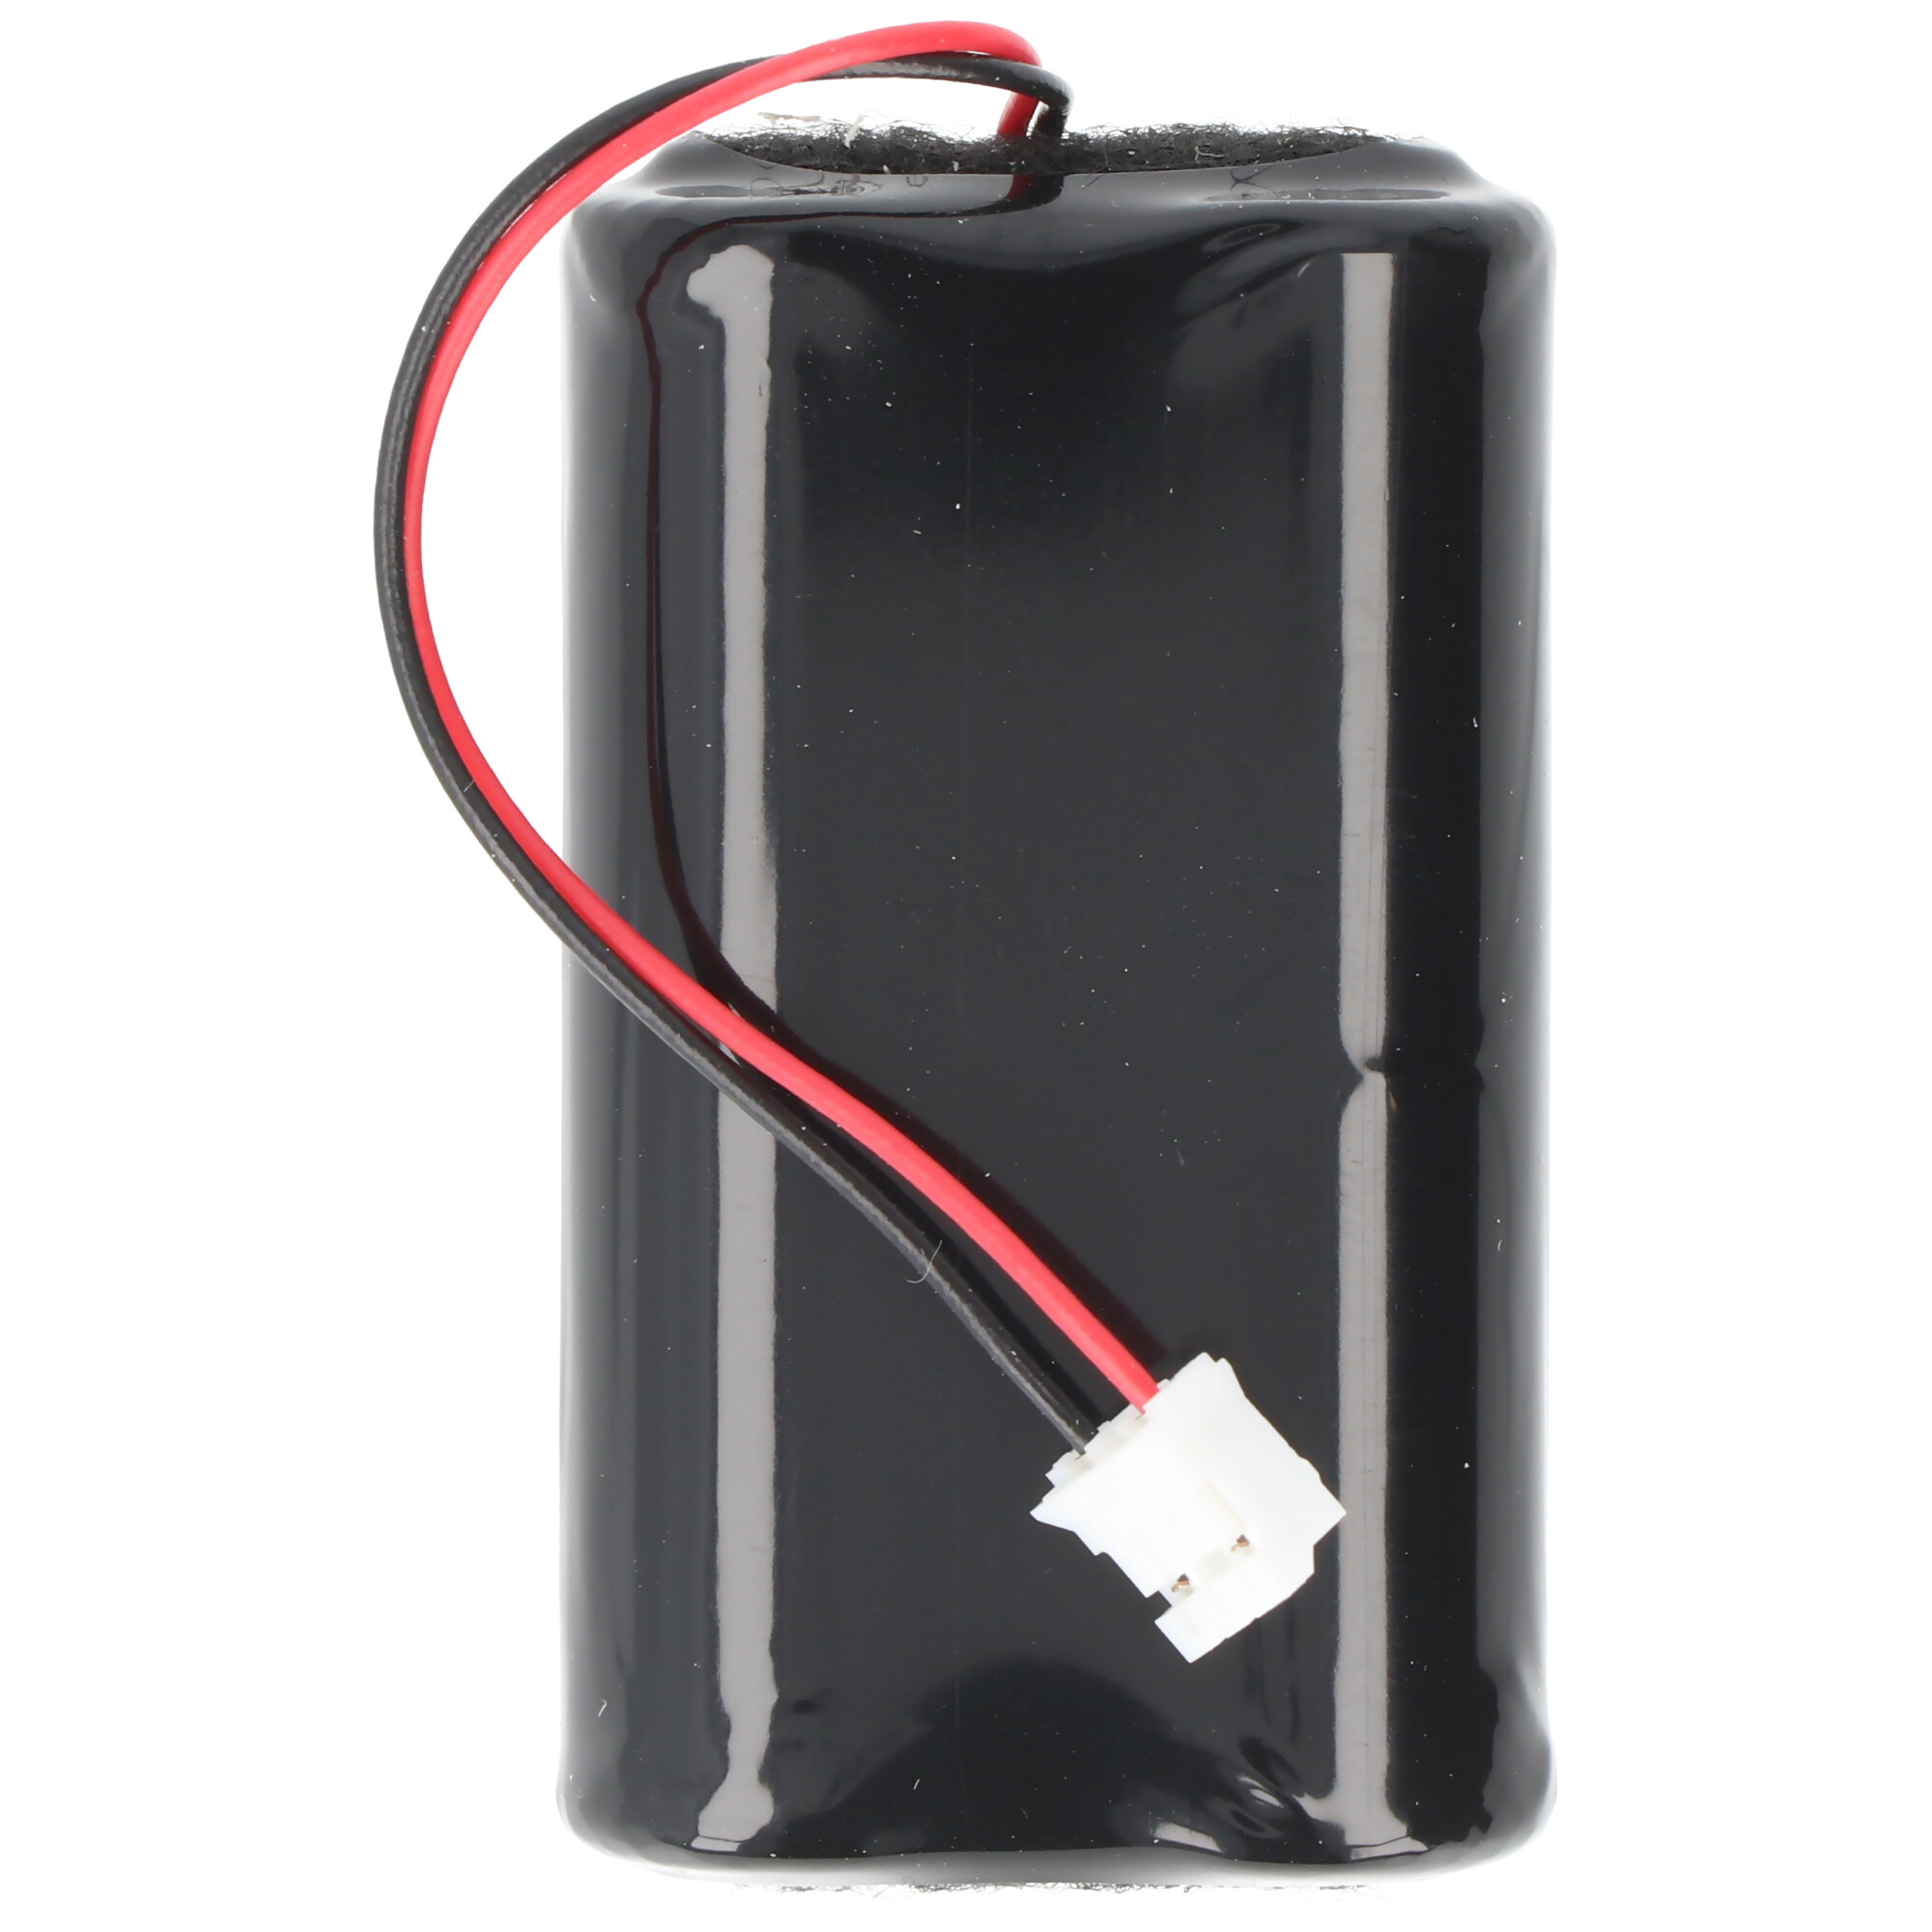 CR-4148 Batteriepack, für Notifier Sicherheitssysteme CR-4148, Batterie für FDKM 2100R und FDKM 2100B